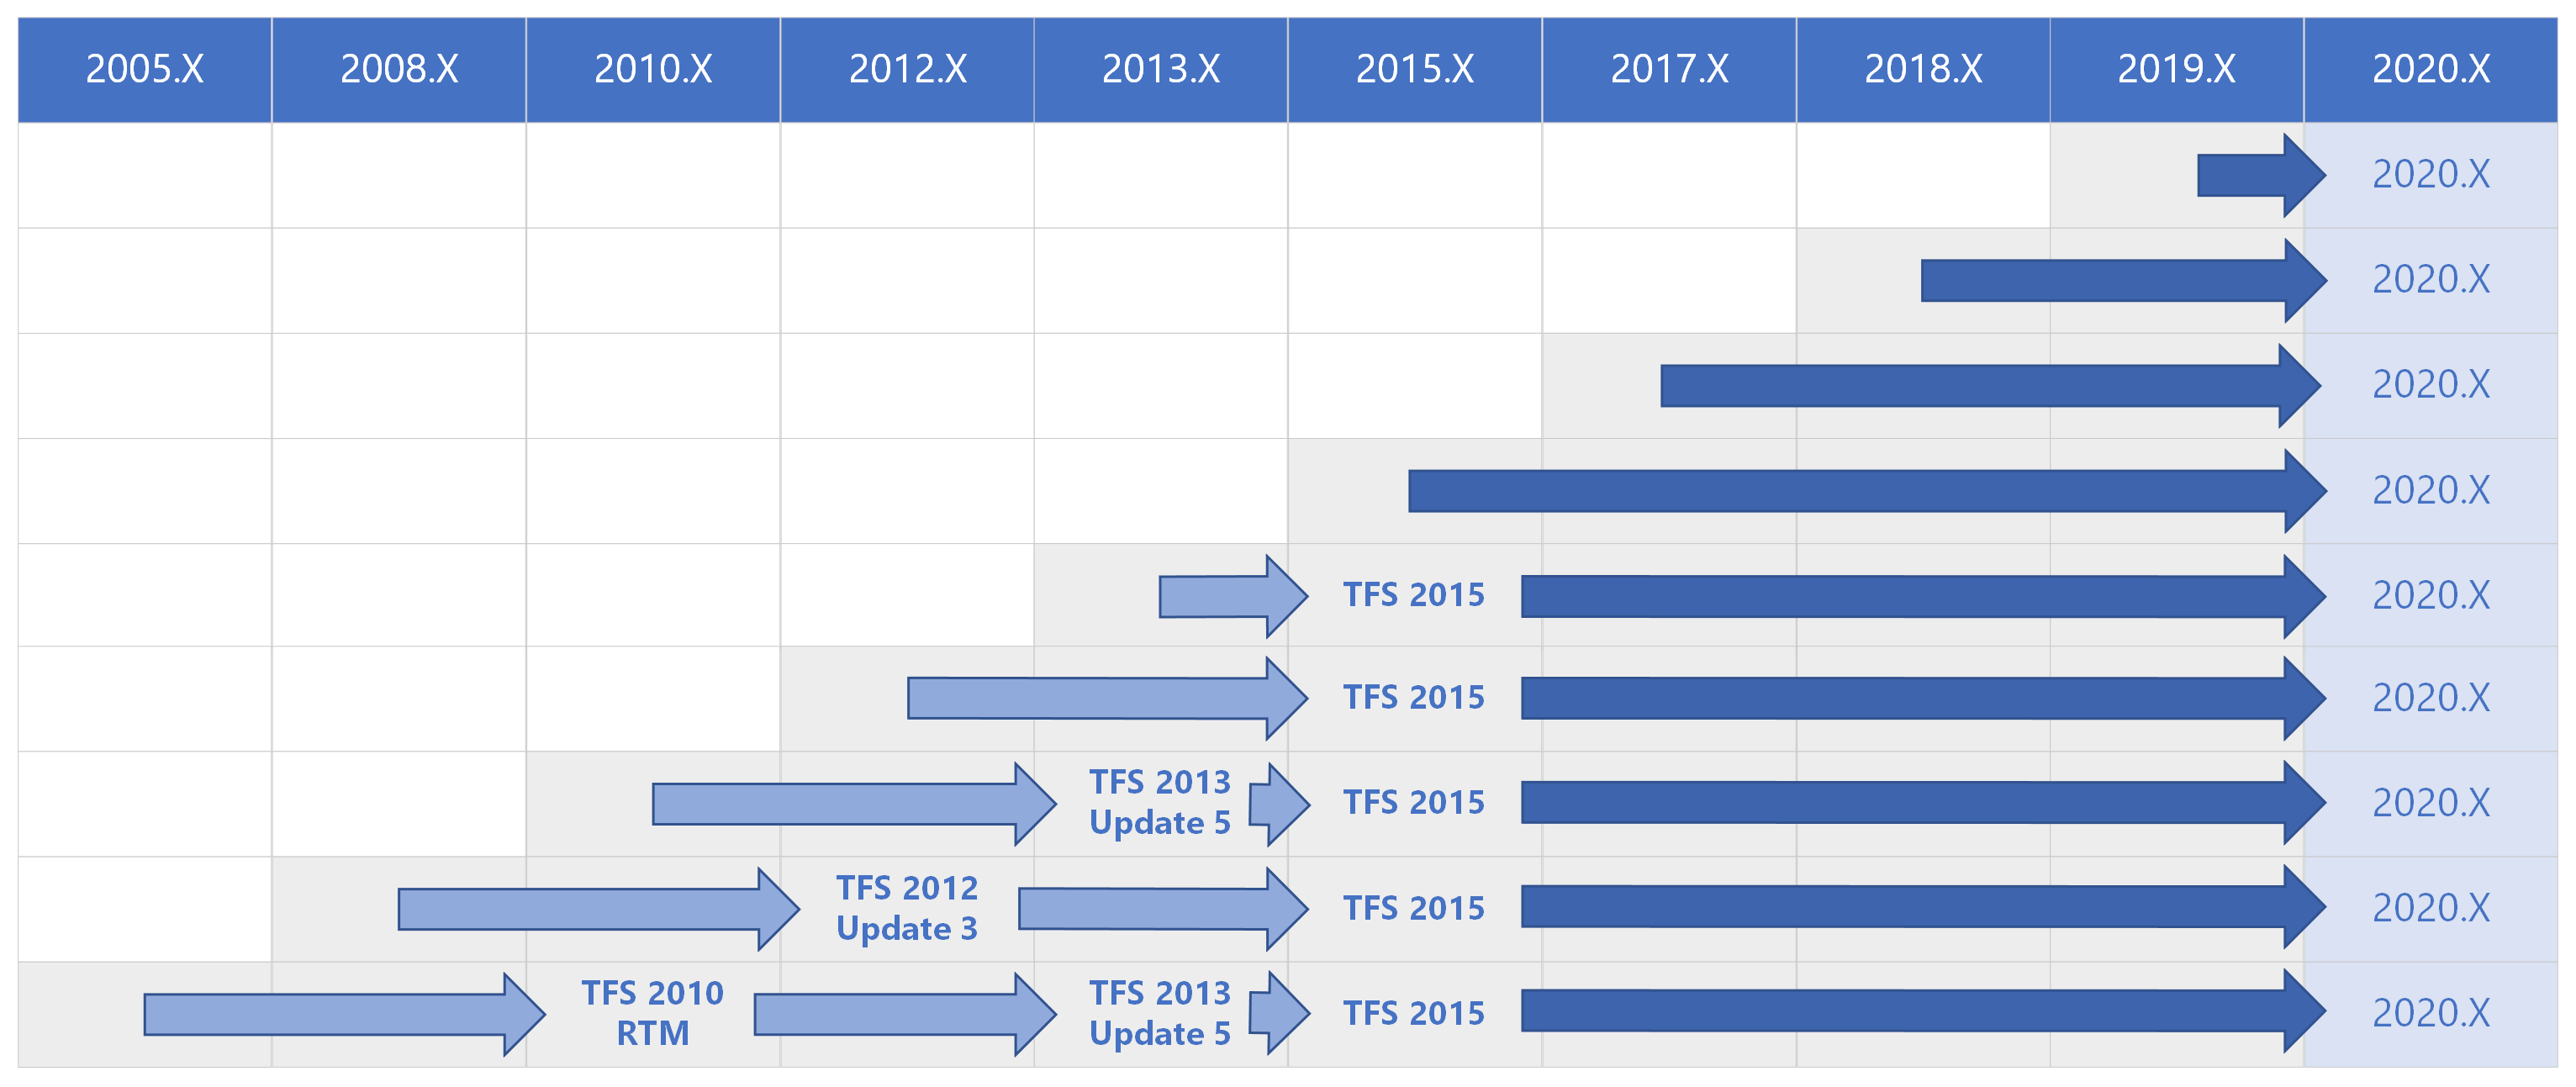 Matriks jalur Peningkatan Azure DevOps 2020 untuk semua versi sebelumnya.